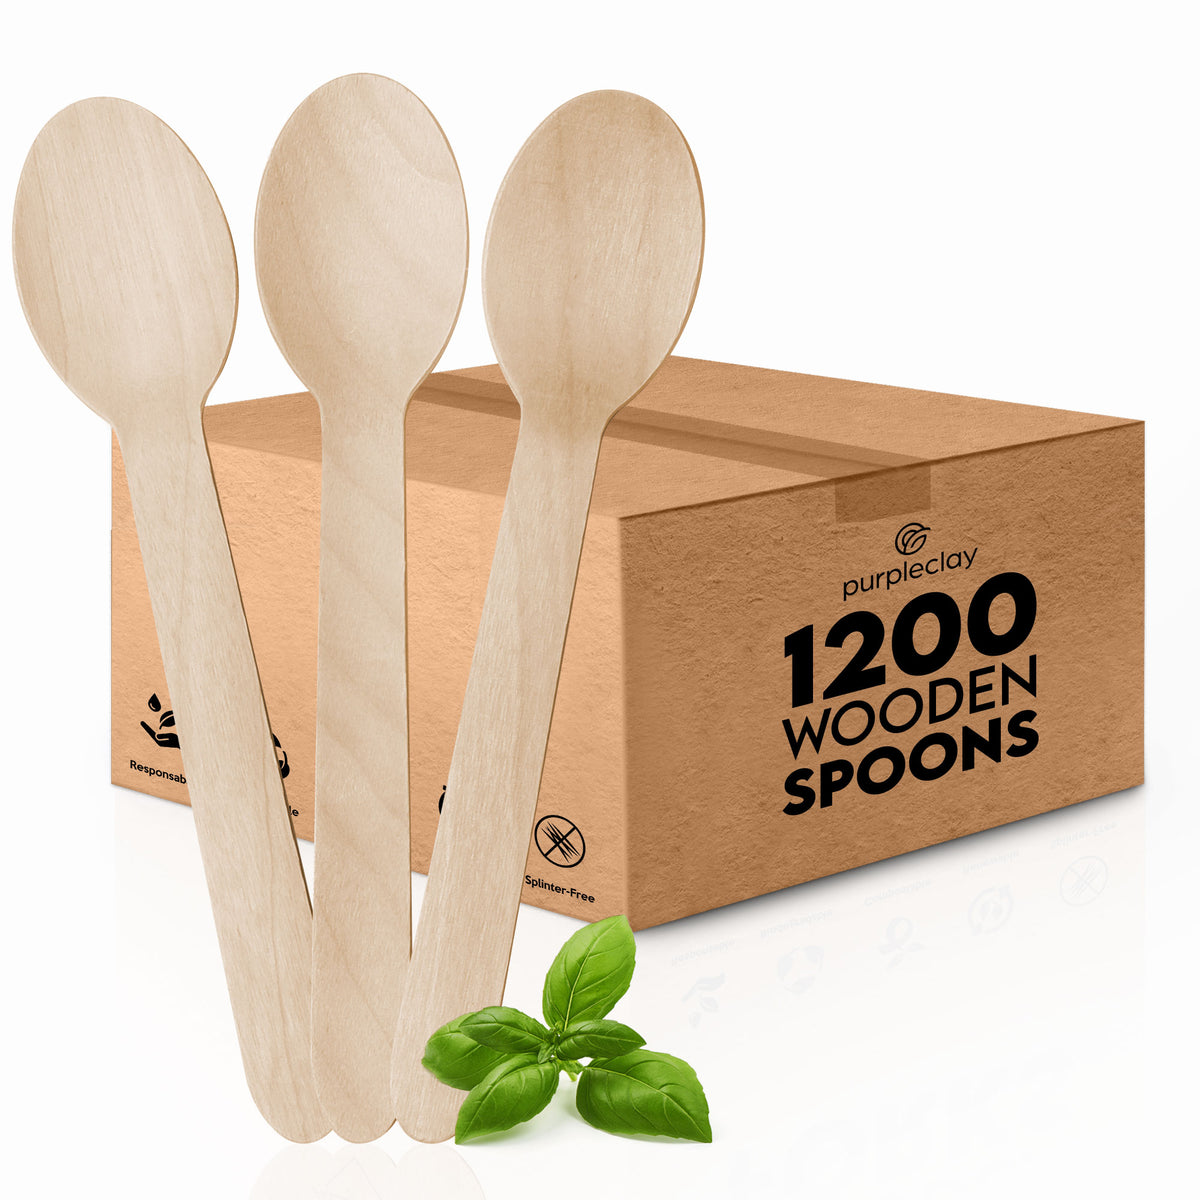 Wooden spoons 1200 pcs